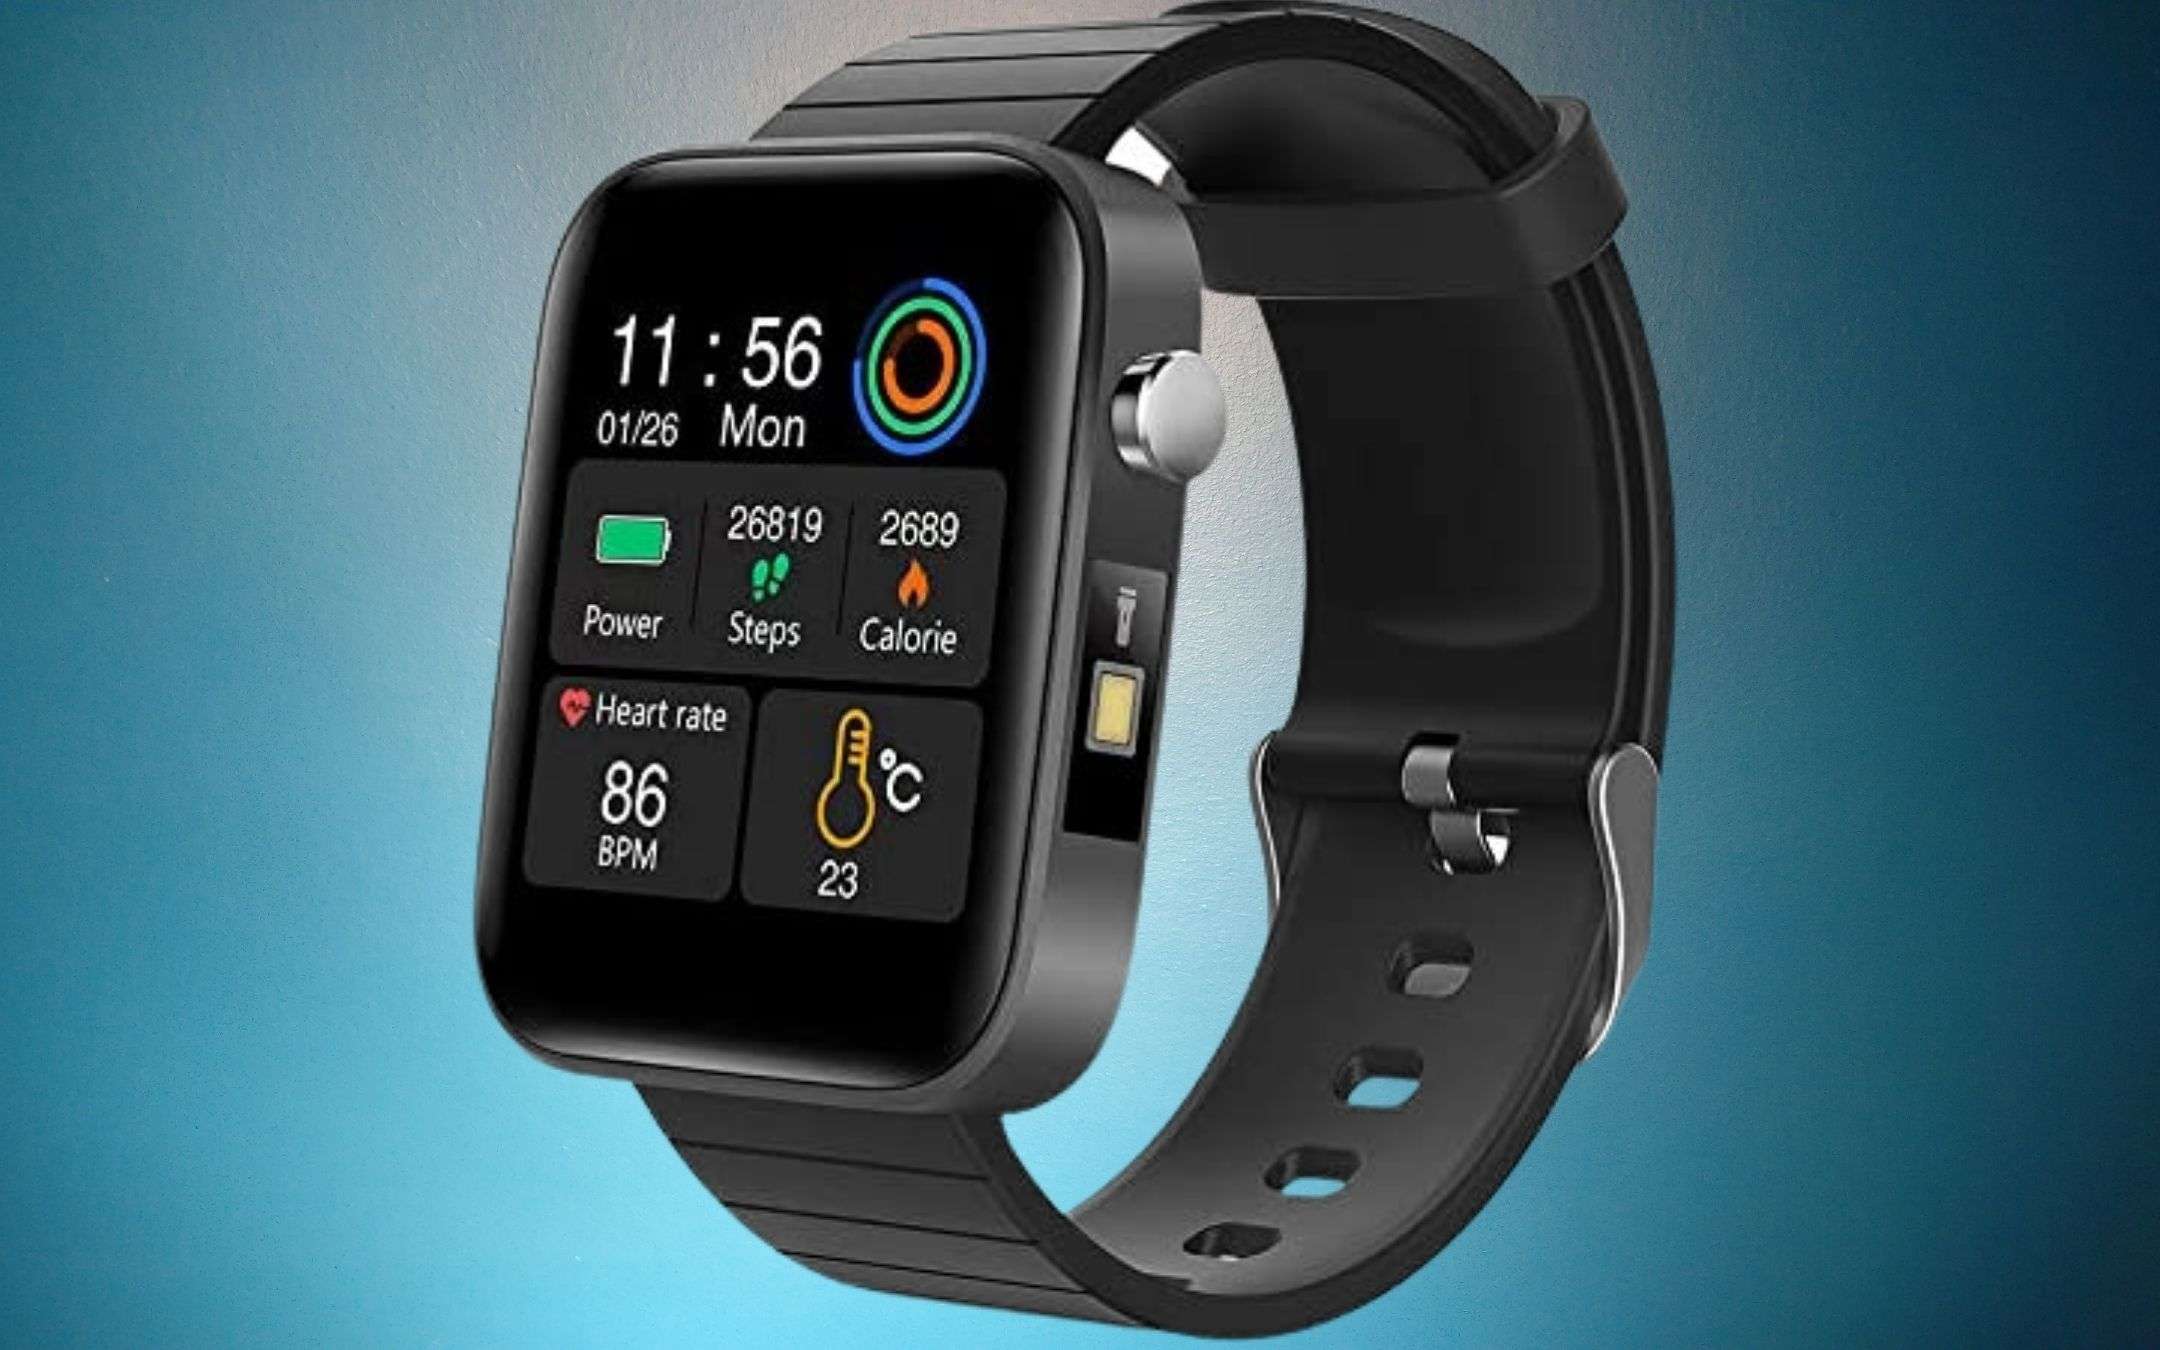 Ottimo smartwatch per la salute a 33€: offertaccia Amazon